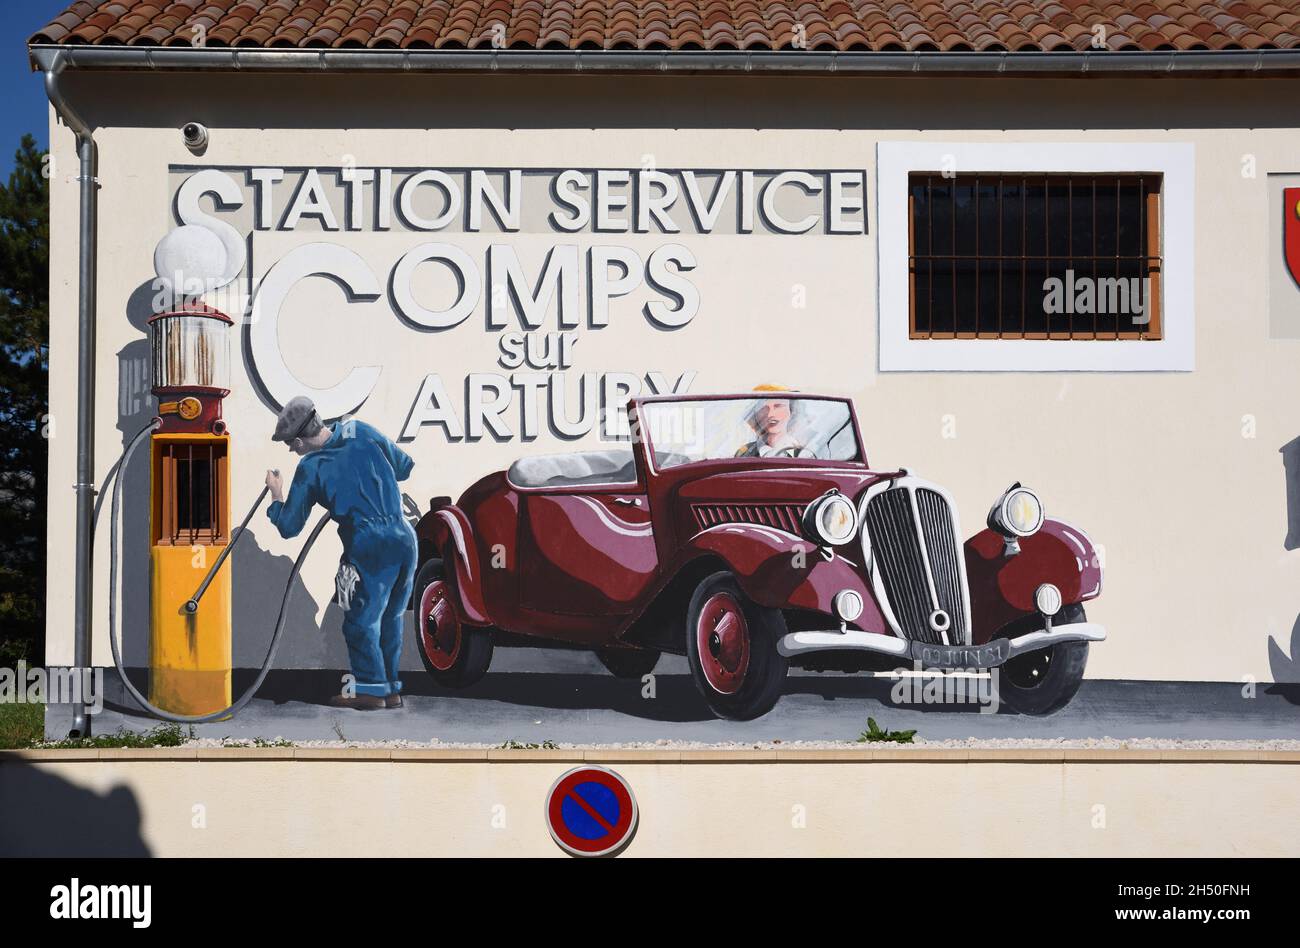 Stazione di benzina, stazione di rifornimento o stazione di benzina con murales decorativi o Wall Painting di Vintage French Car Comps-sur-Artuby Var Provence France Foto Stock